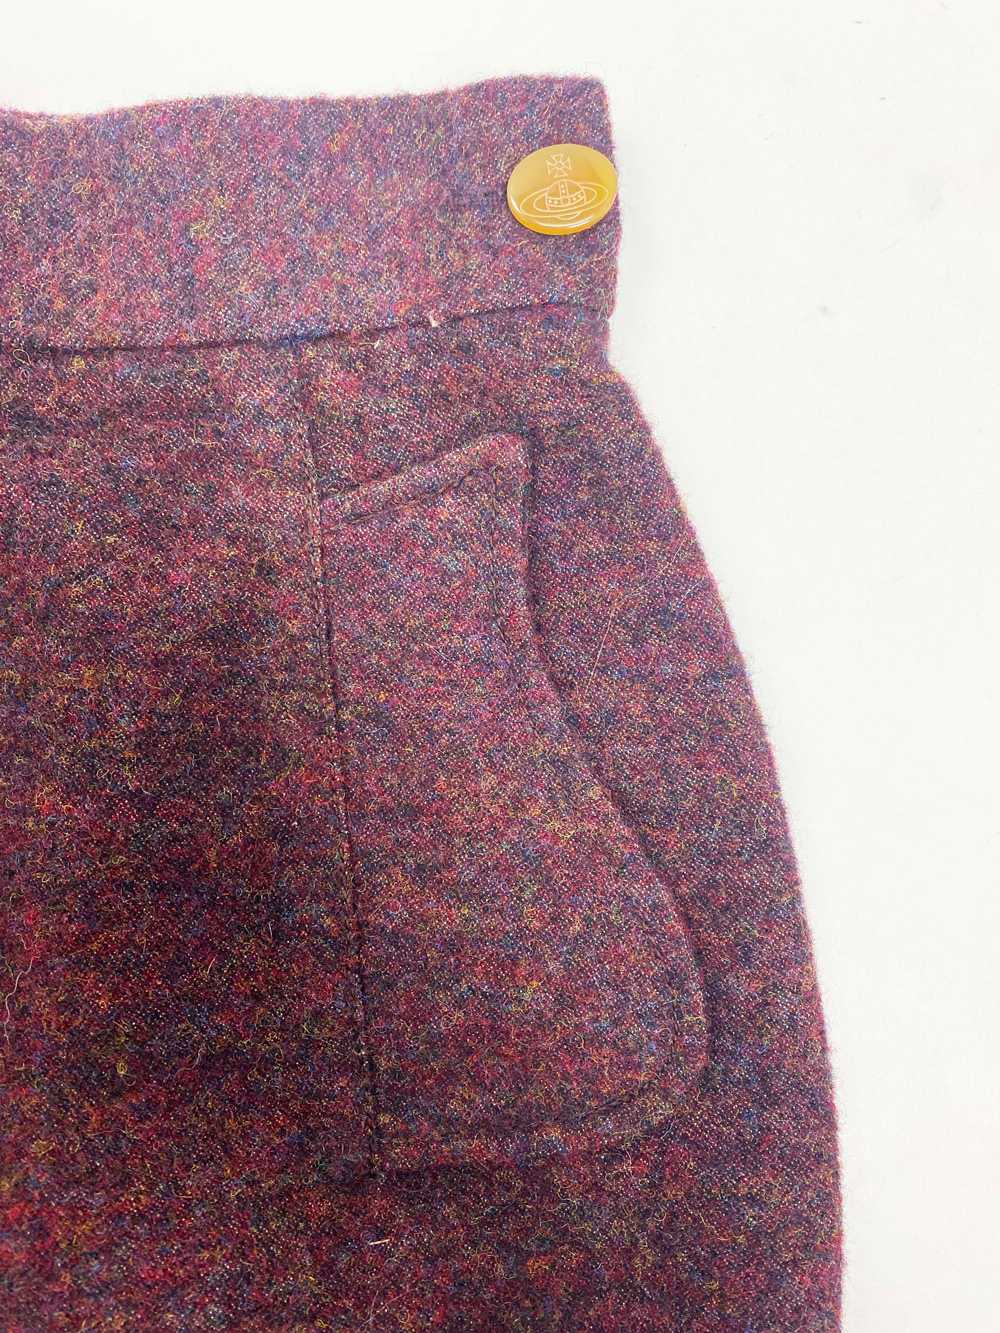 Vivienne Westwood F/W 1999 mini skirt - image 7